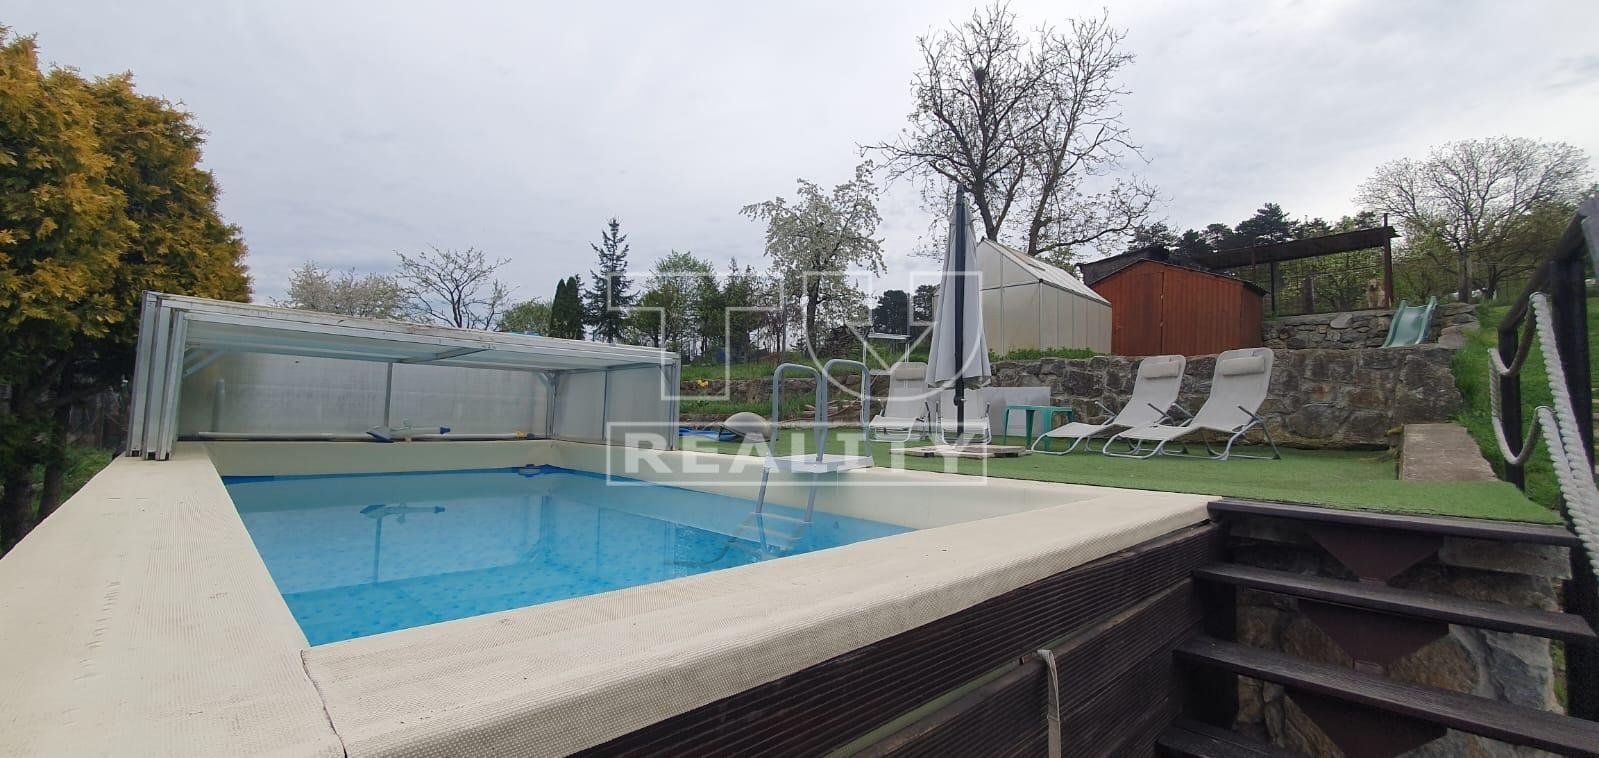 Prenájom rodinného domčeku s krásnym pozemkom a bazén - 745 m2 v obci Dúbravica